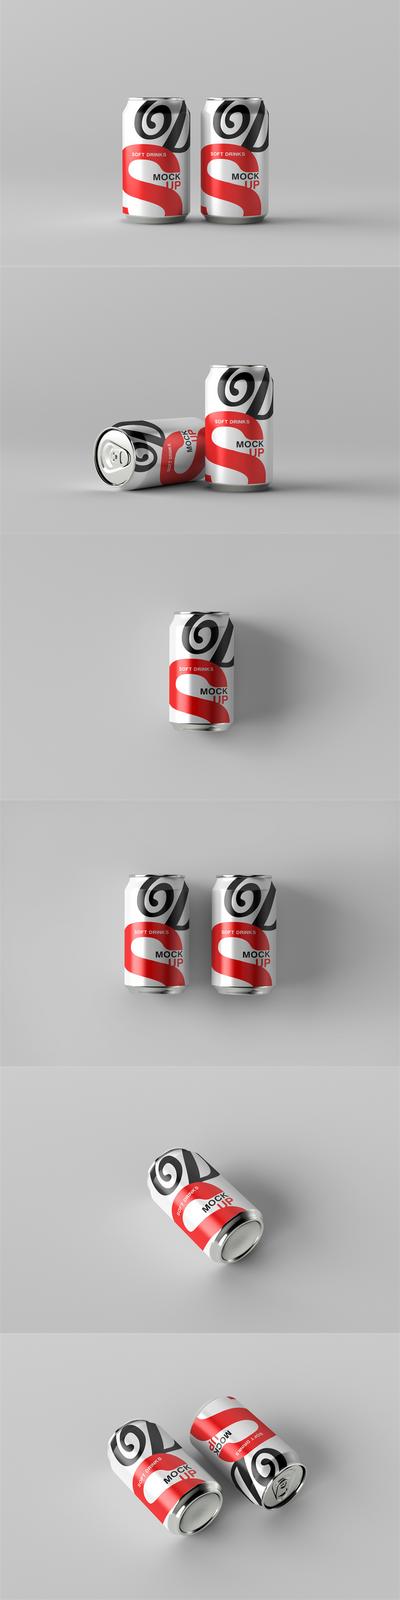 南门网 品牌 VI 样机 饮料 罐头 易拉罐 效果图 PS 啤酒 碳酸饮料